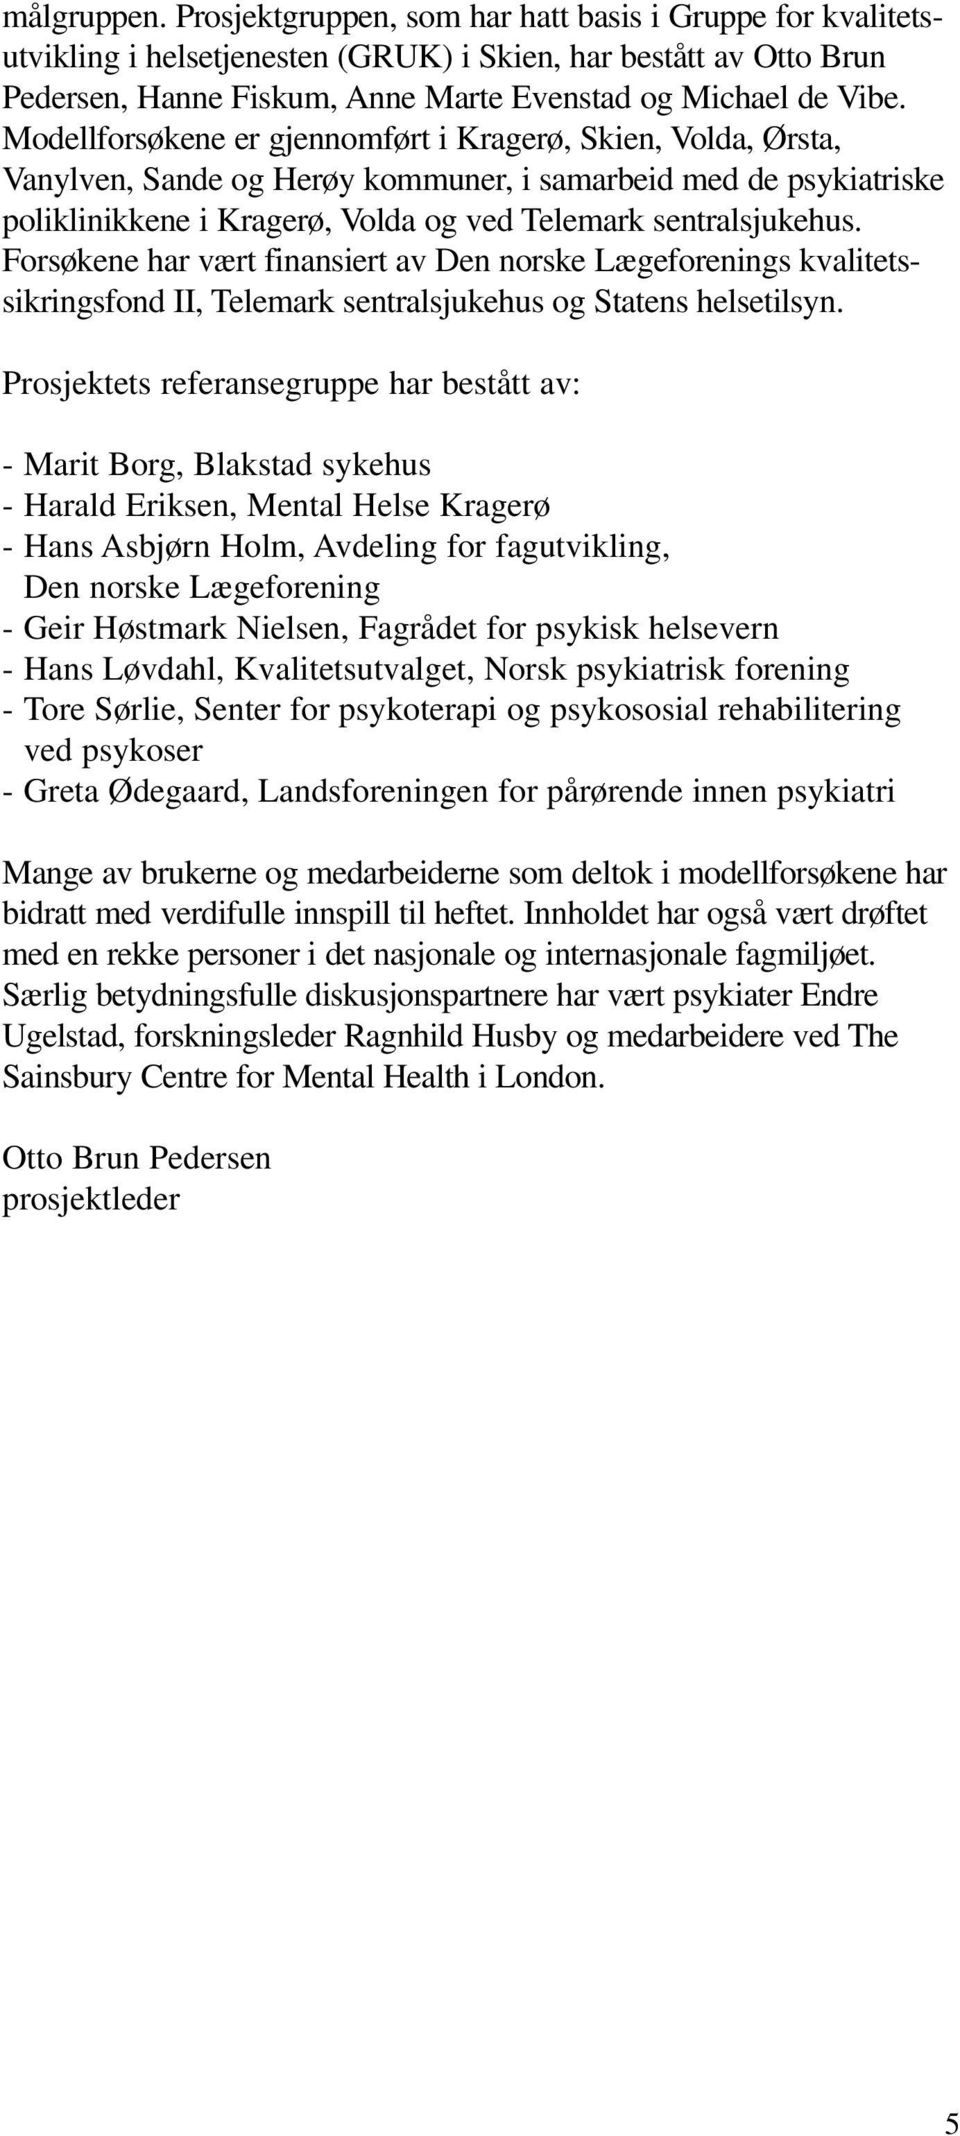 Modellforsøkene er gjennomført i Kragerø, Skien, Volda, Ørsta, Vanylven, Sande og Herøy kommuner, i samarbeid med de psykiatriske poliklinikkene i Kragerø, Volda og ved Telemark sentralsjukehus.